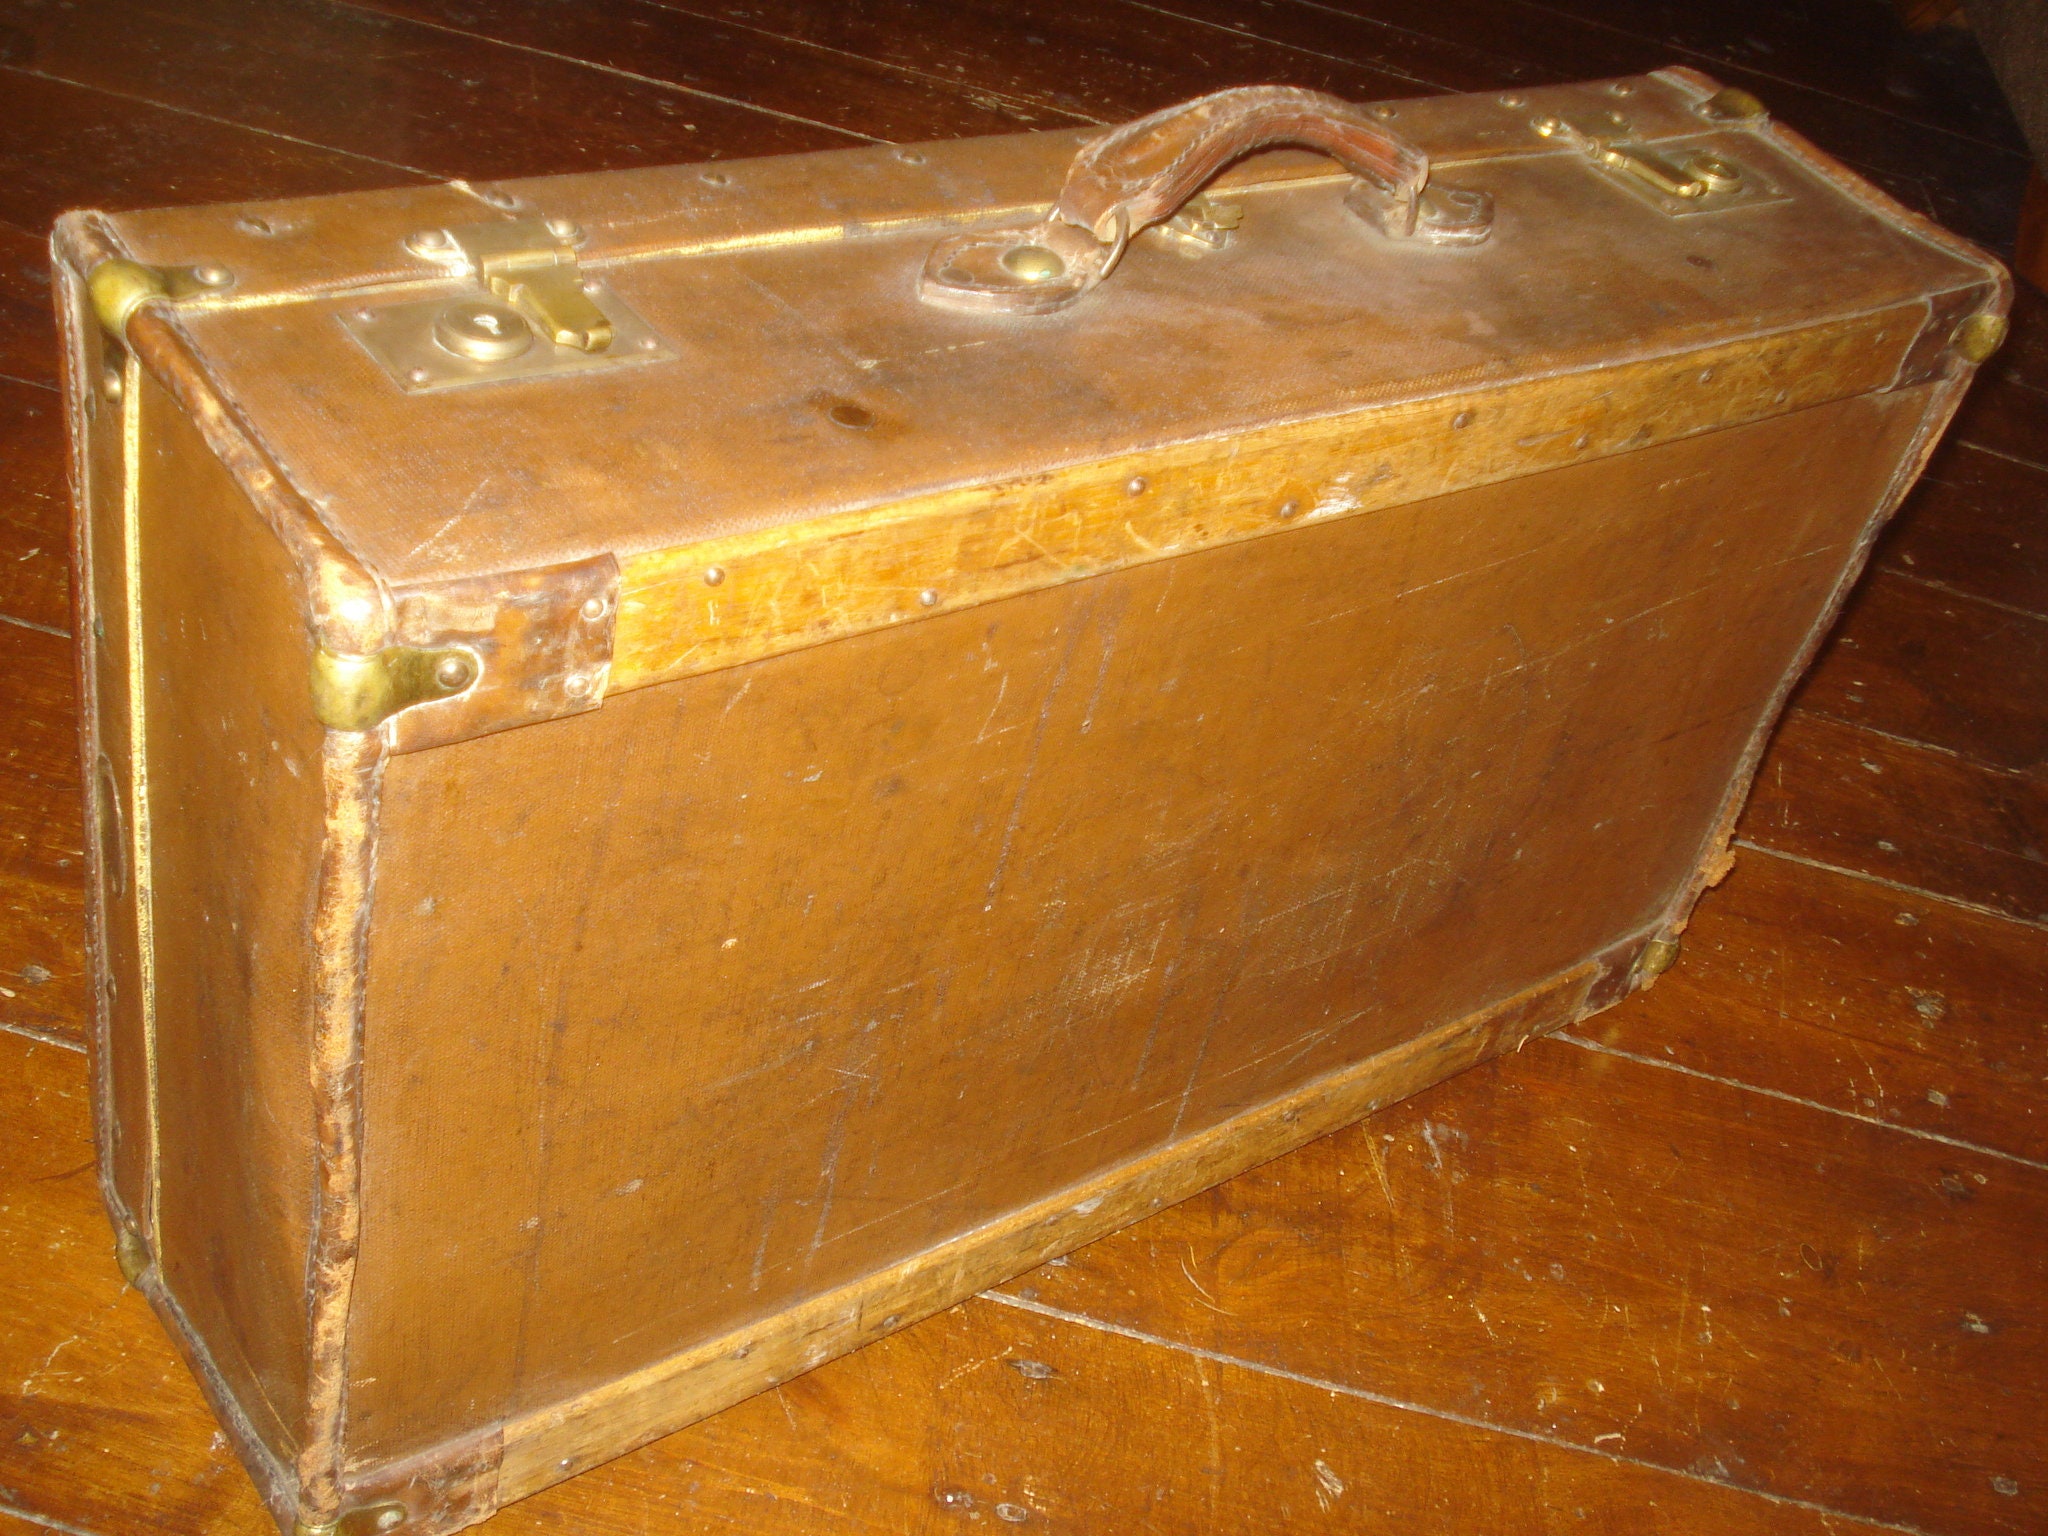 Kensington trunk, leather, XL - Newport